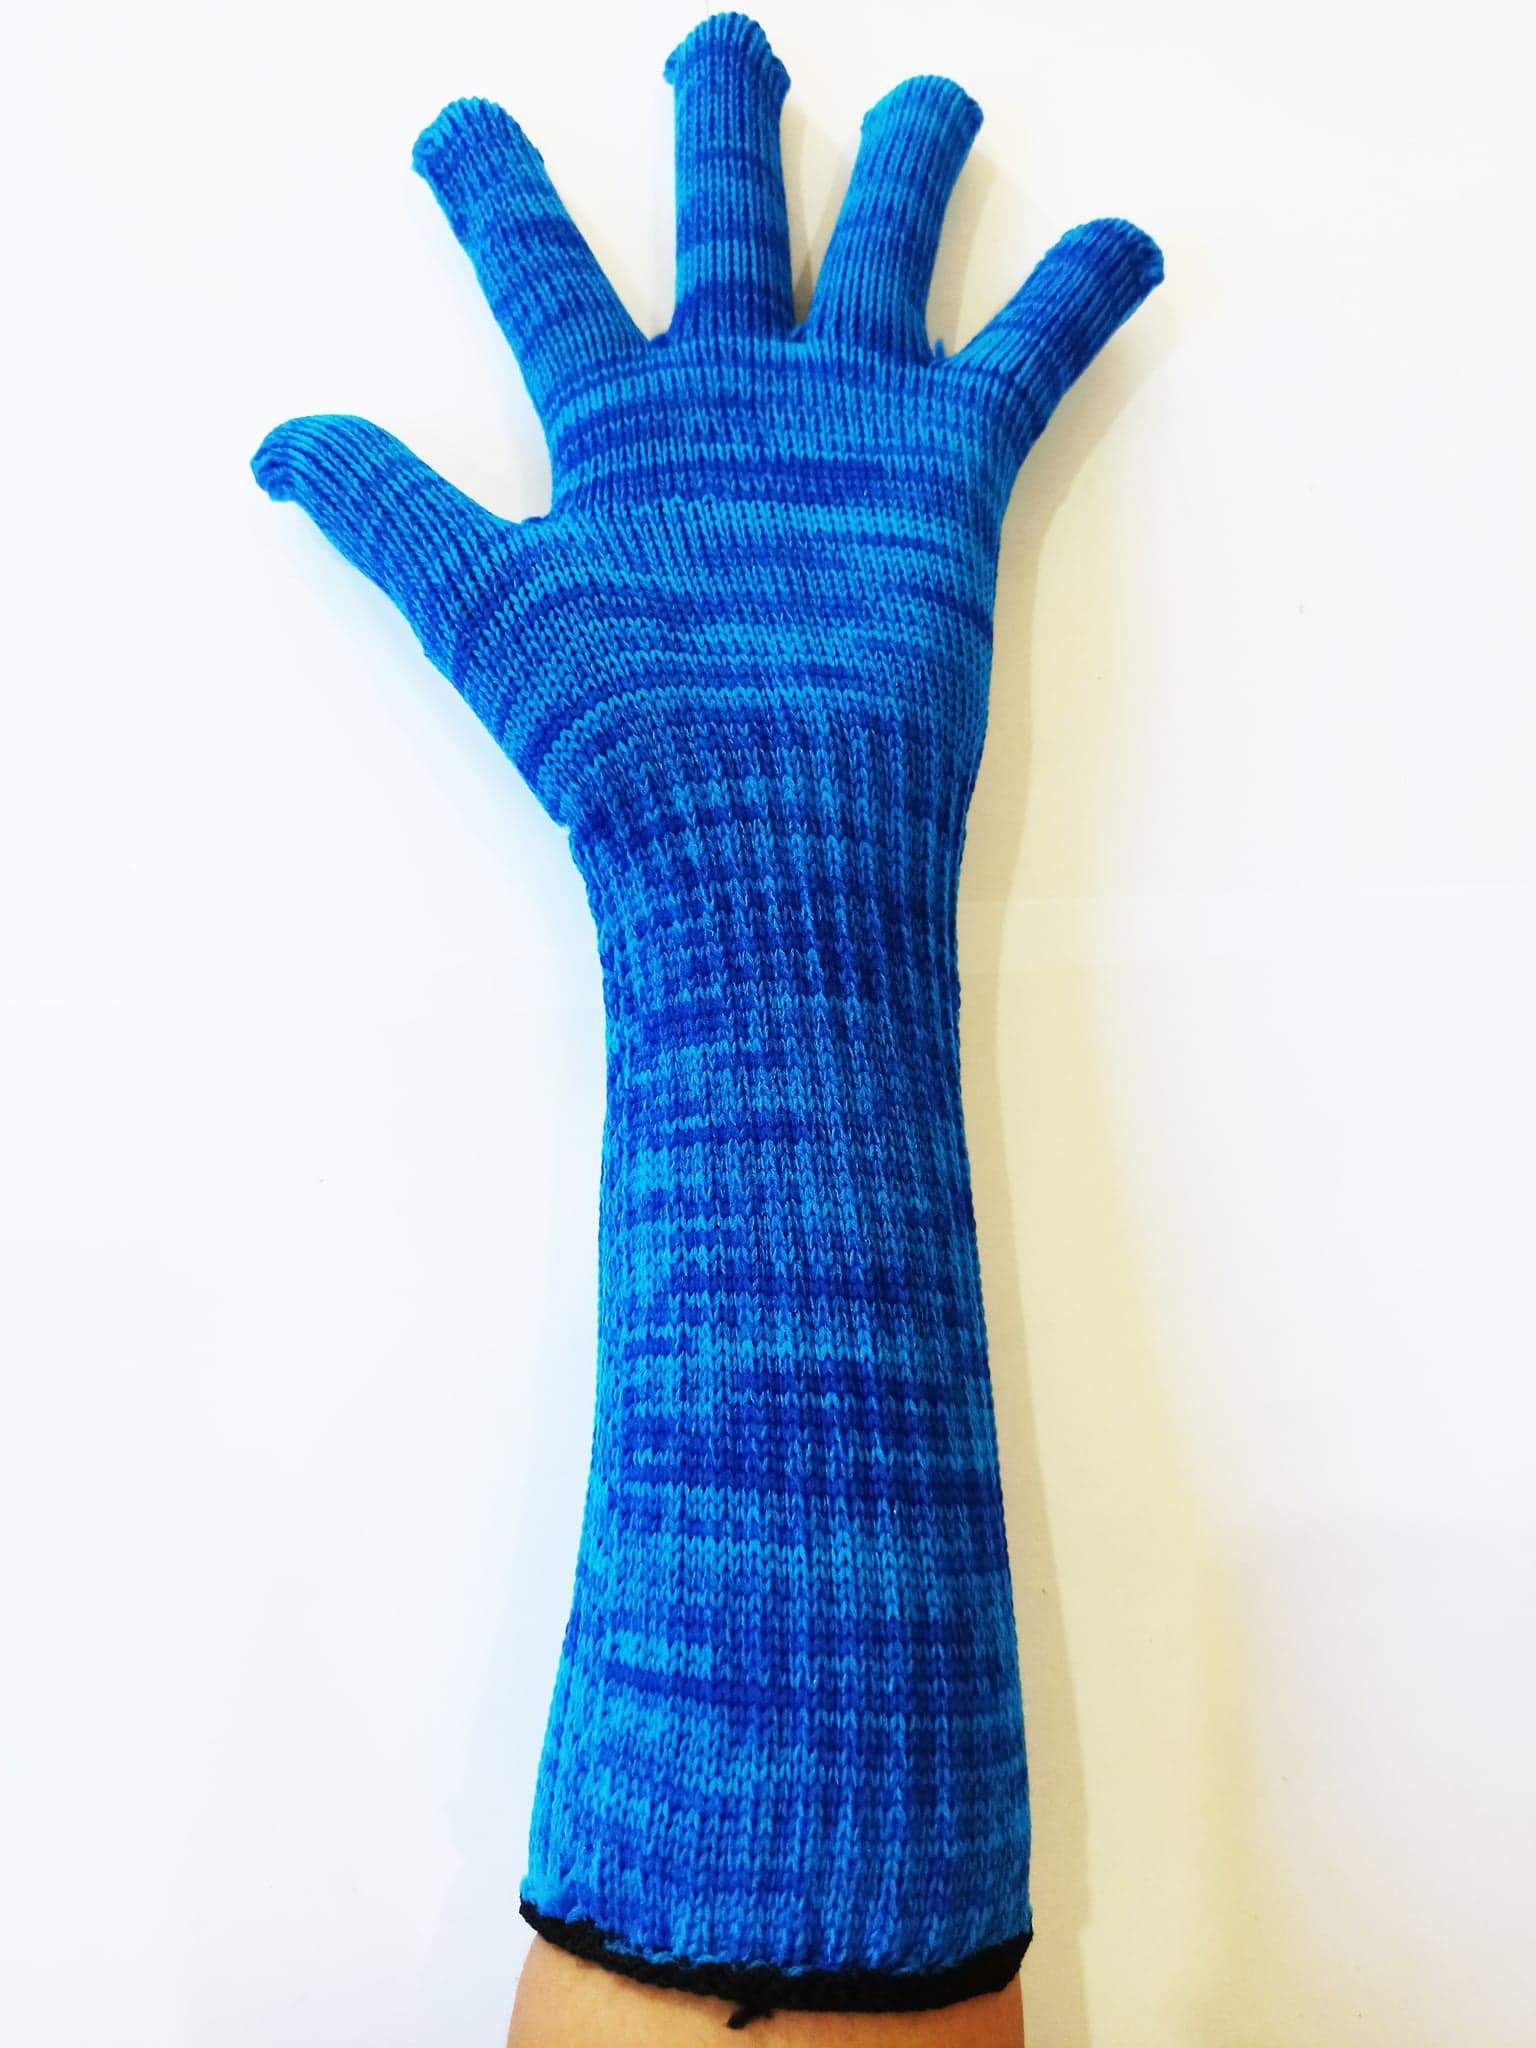 ถุงมือ ถุงมือผ้า ถุงมือยาว มี4สี แบบแพ็ค6 คู่และ12คู่ ถุงมือช่าง ถุงมือการเกษตร ถุงมือผ้าเอนกประสงค์ ยาว12นิ้วแขนยาวพิเ